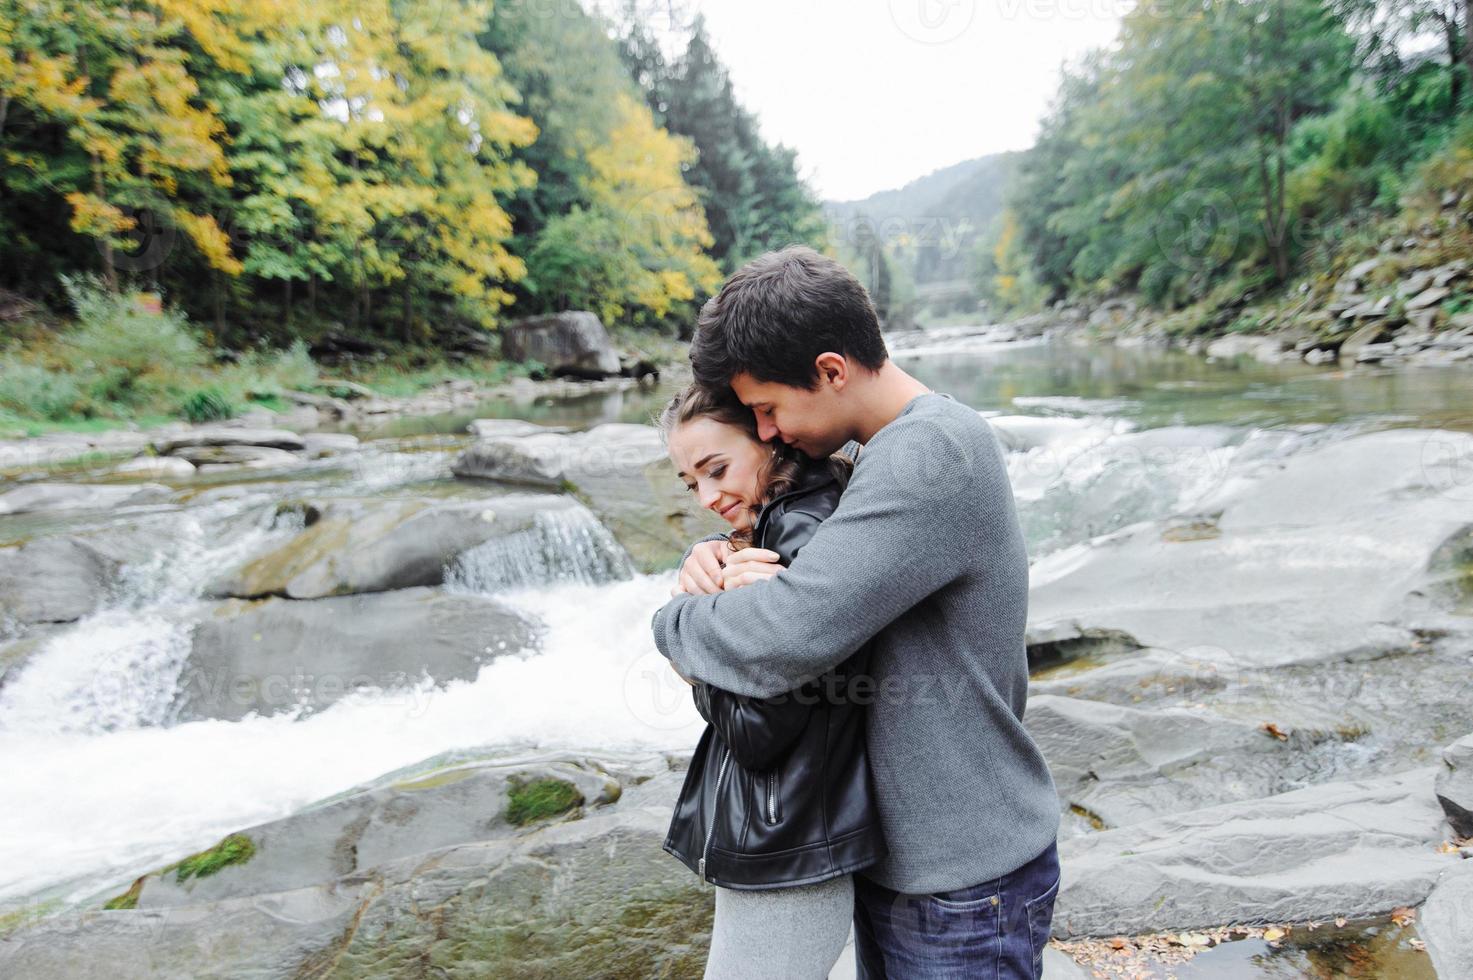 incroyablement beau et charmant couple sur le fond d'une rivière de montagne photo